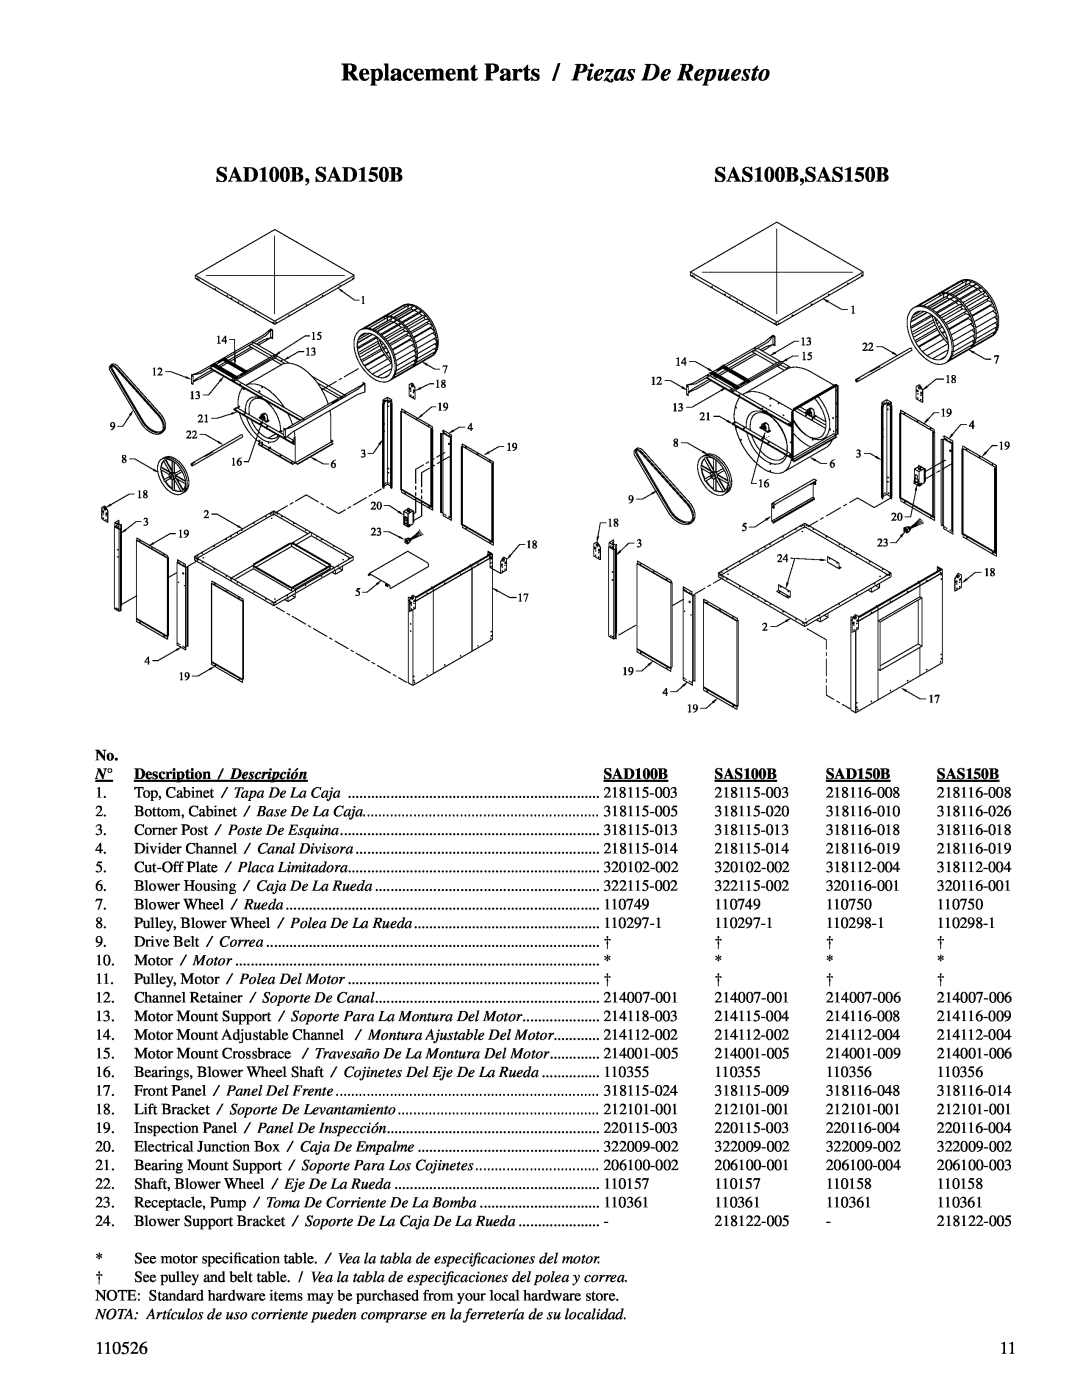 Essick Air Replacement Parts / Piezas De Repuesto, SAD100B, SAD150B, SAS100B,SAS150B, 110526, Description / Descripción 